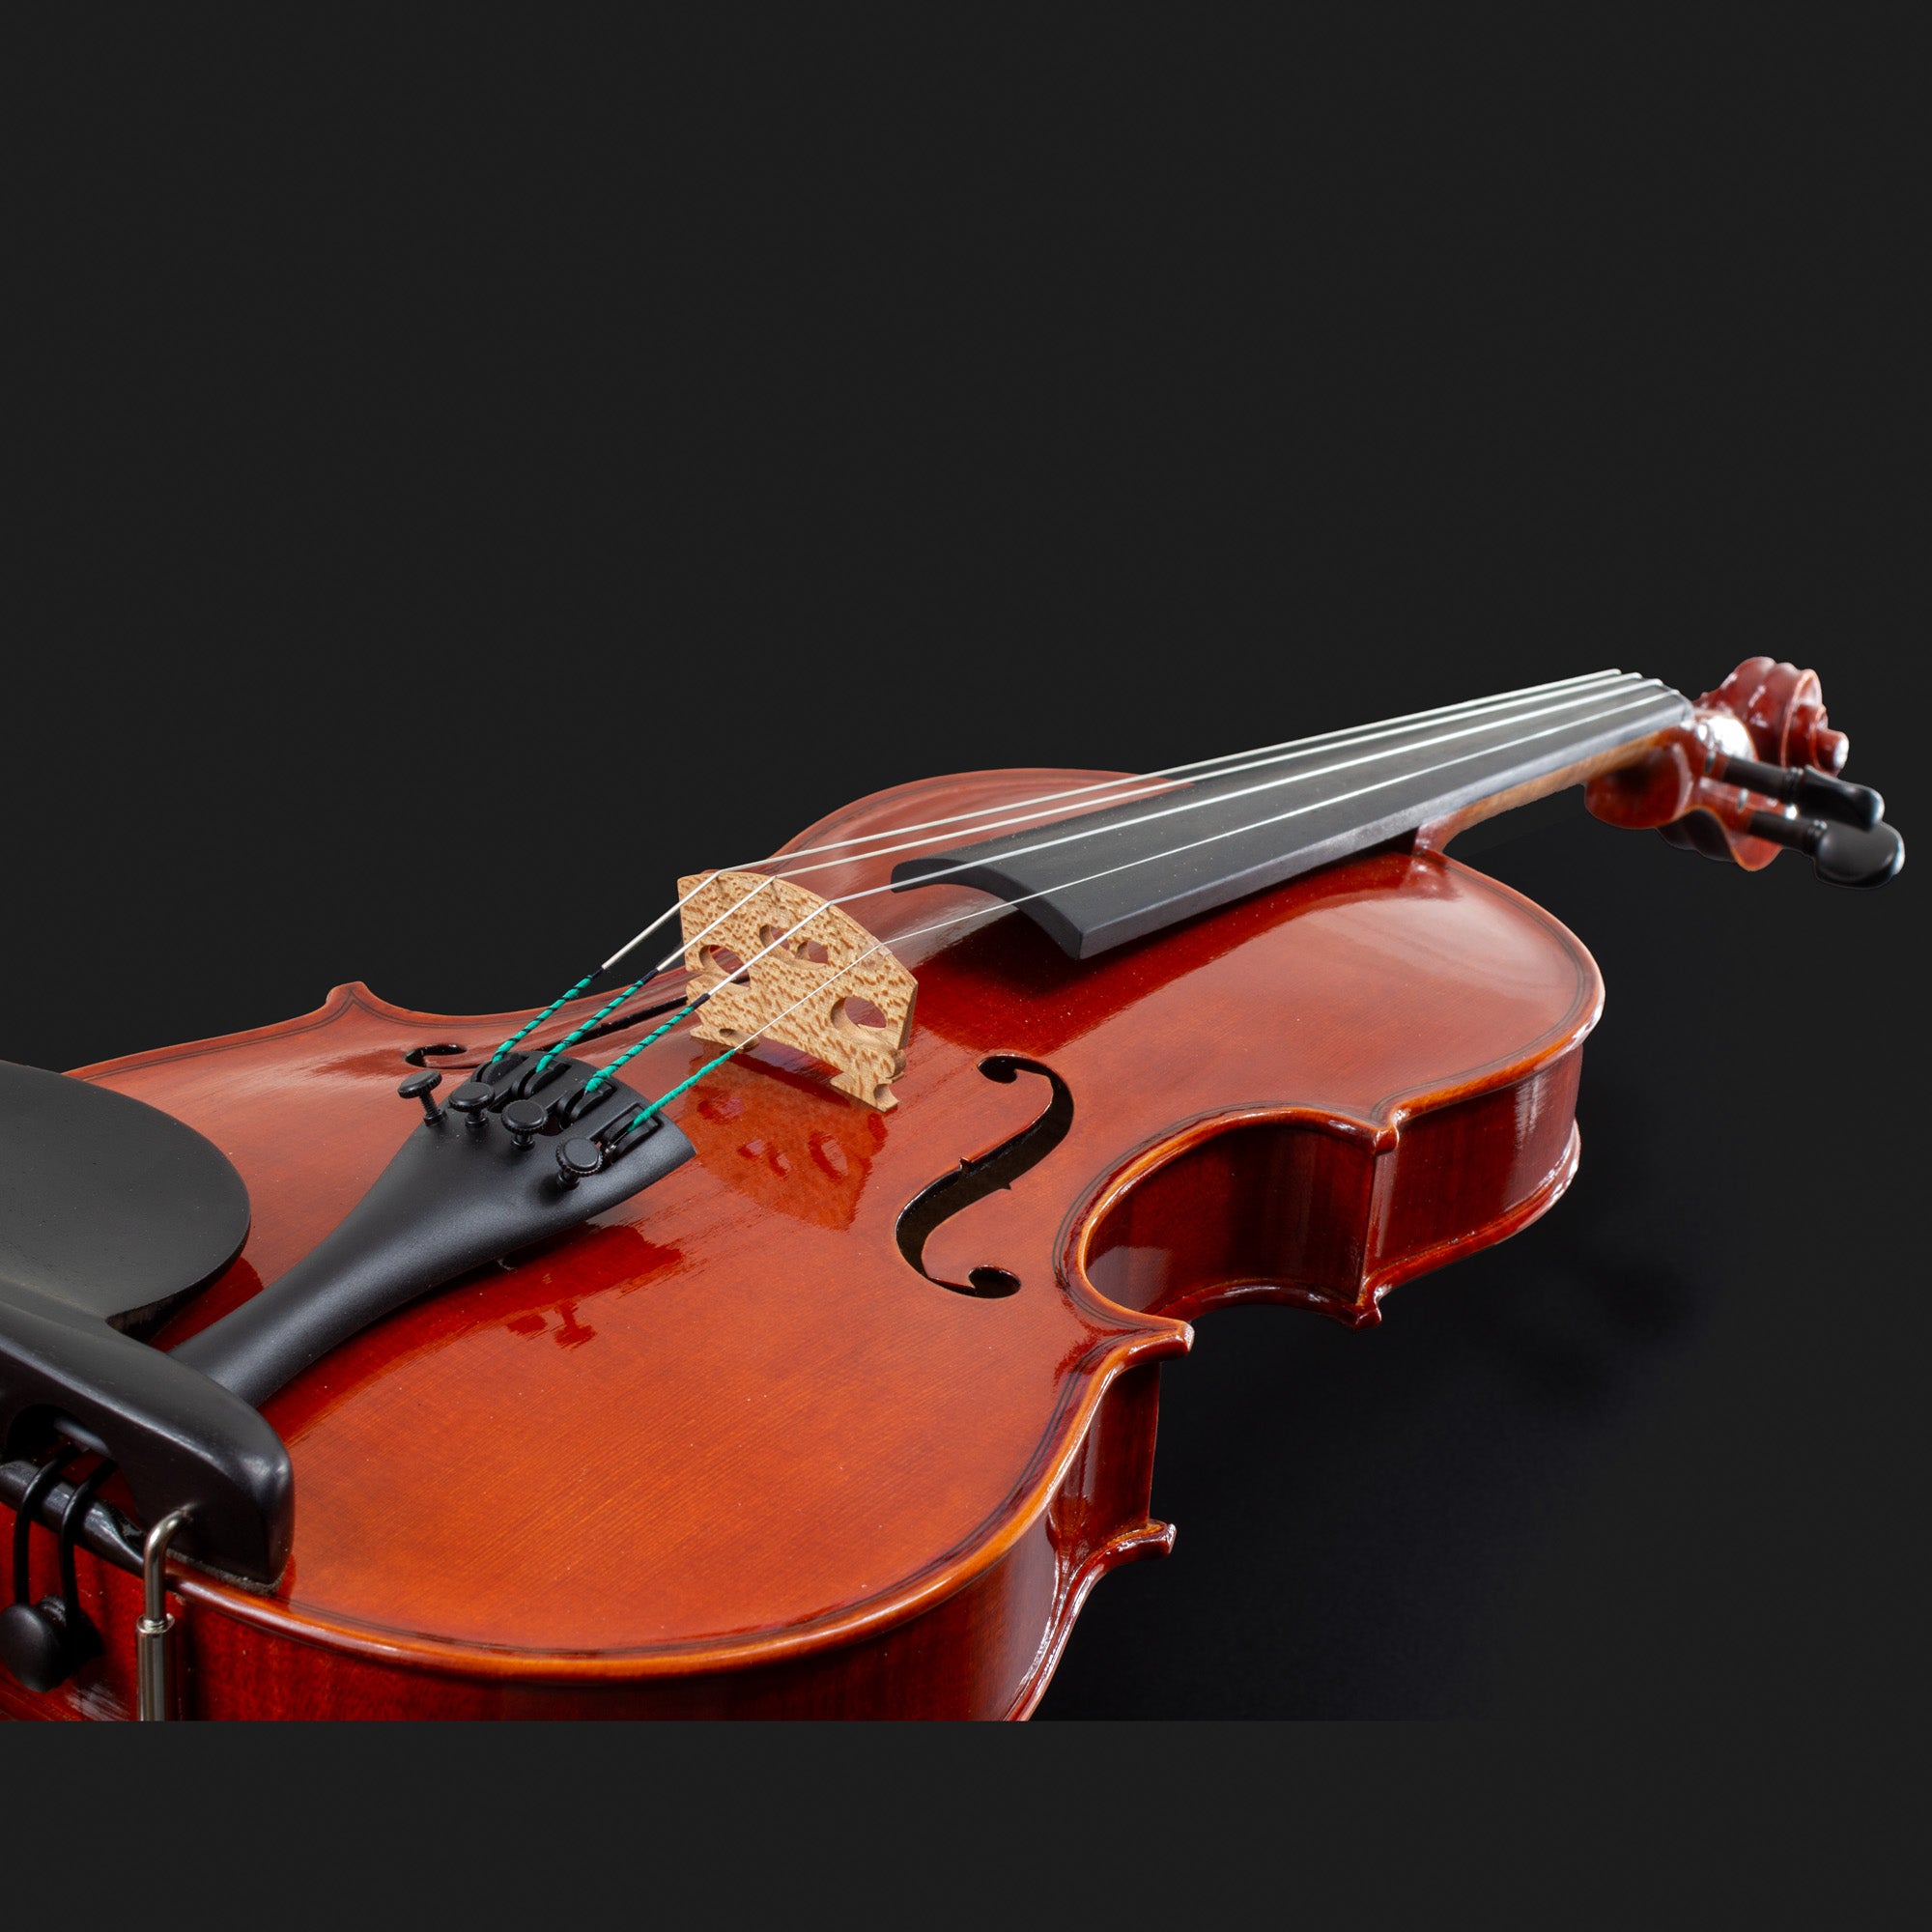 101 Model Violin